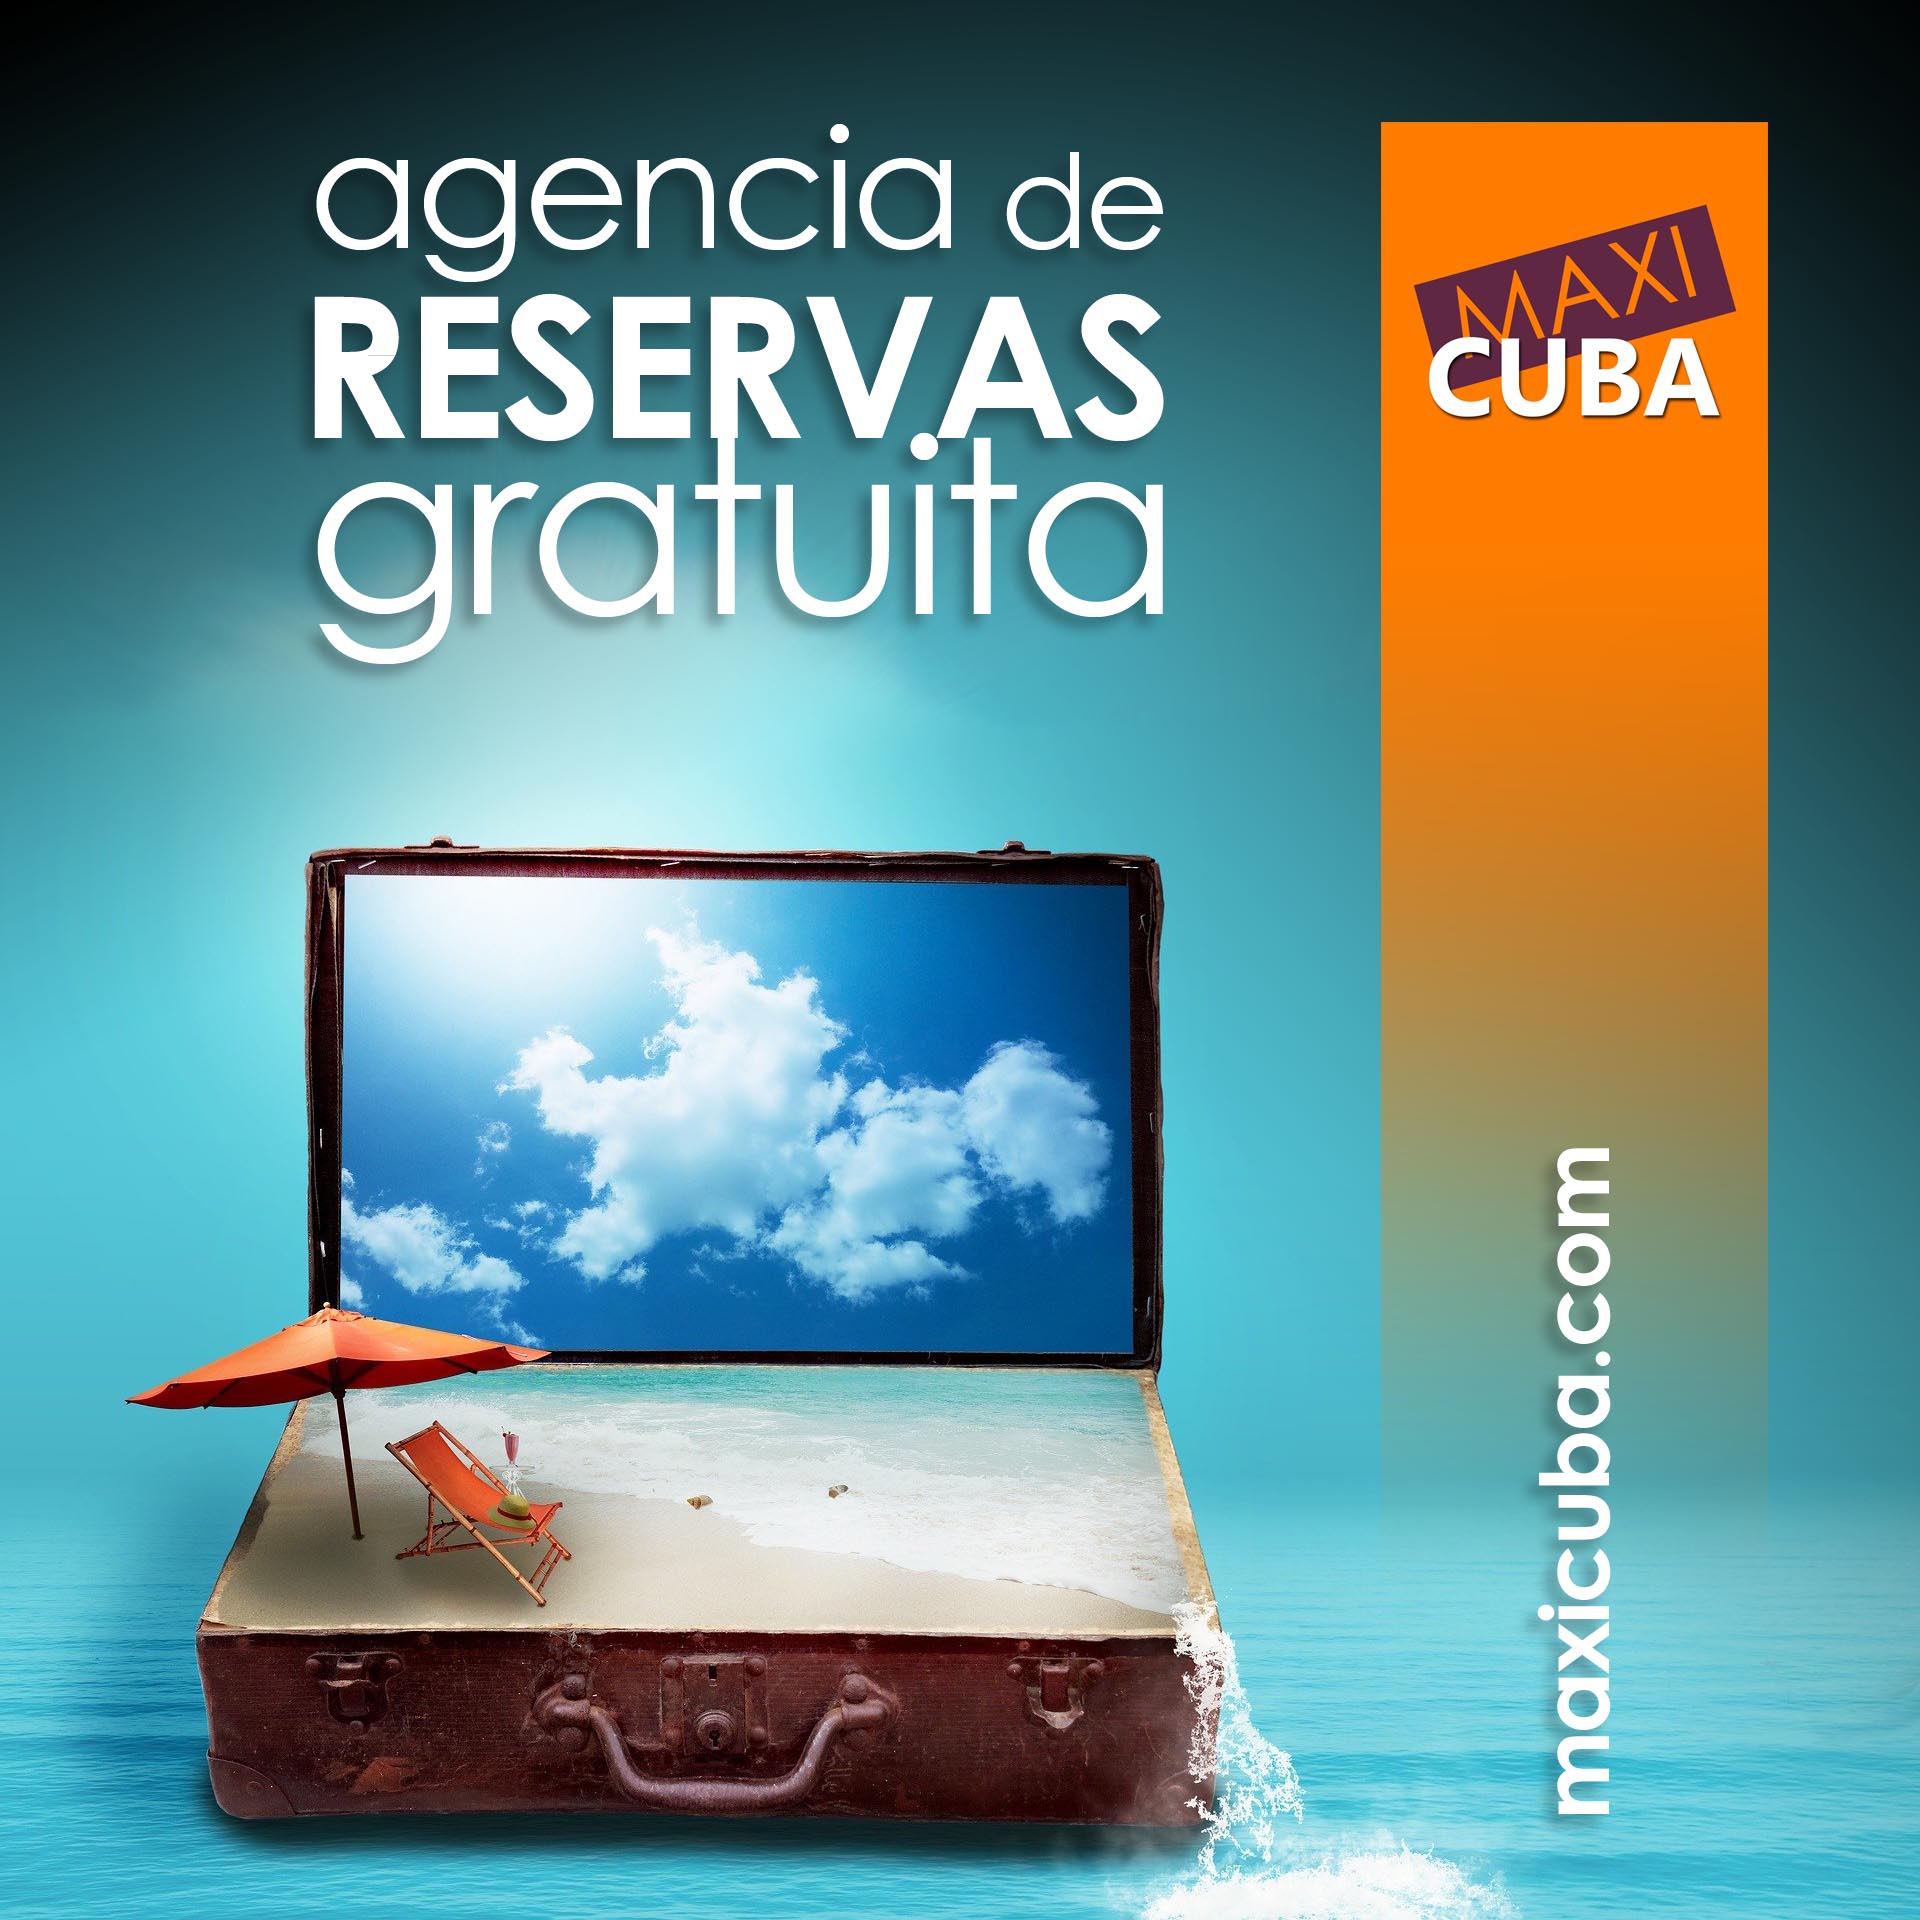 Agencia de Reservas Gratuita - Maxicuba